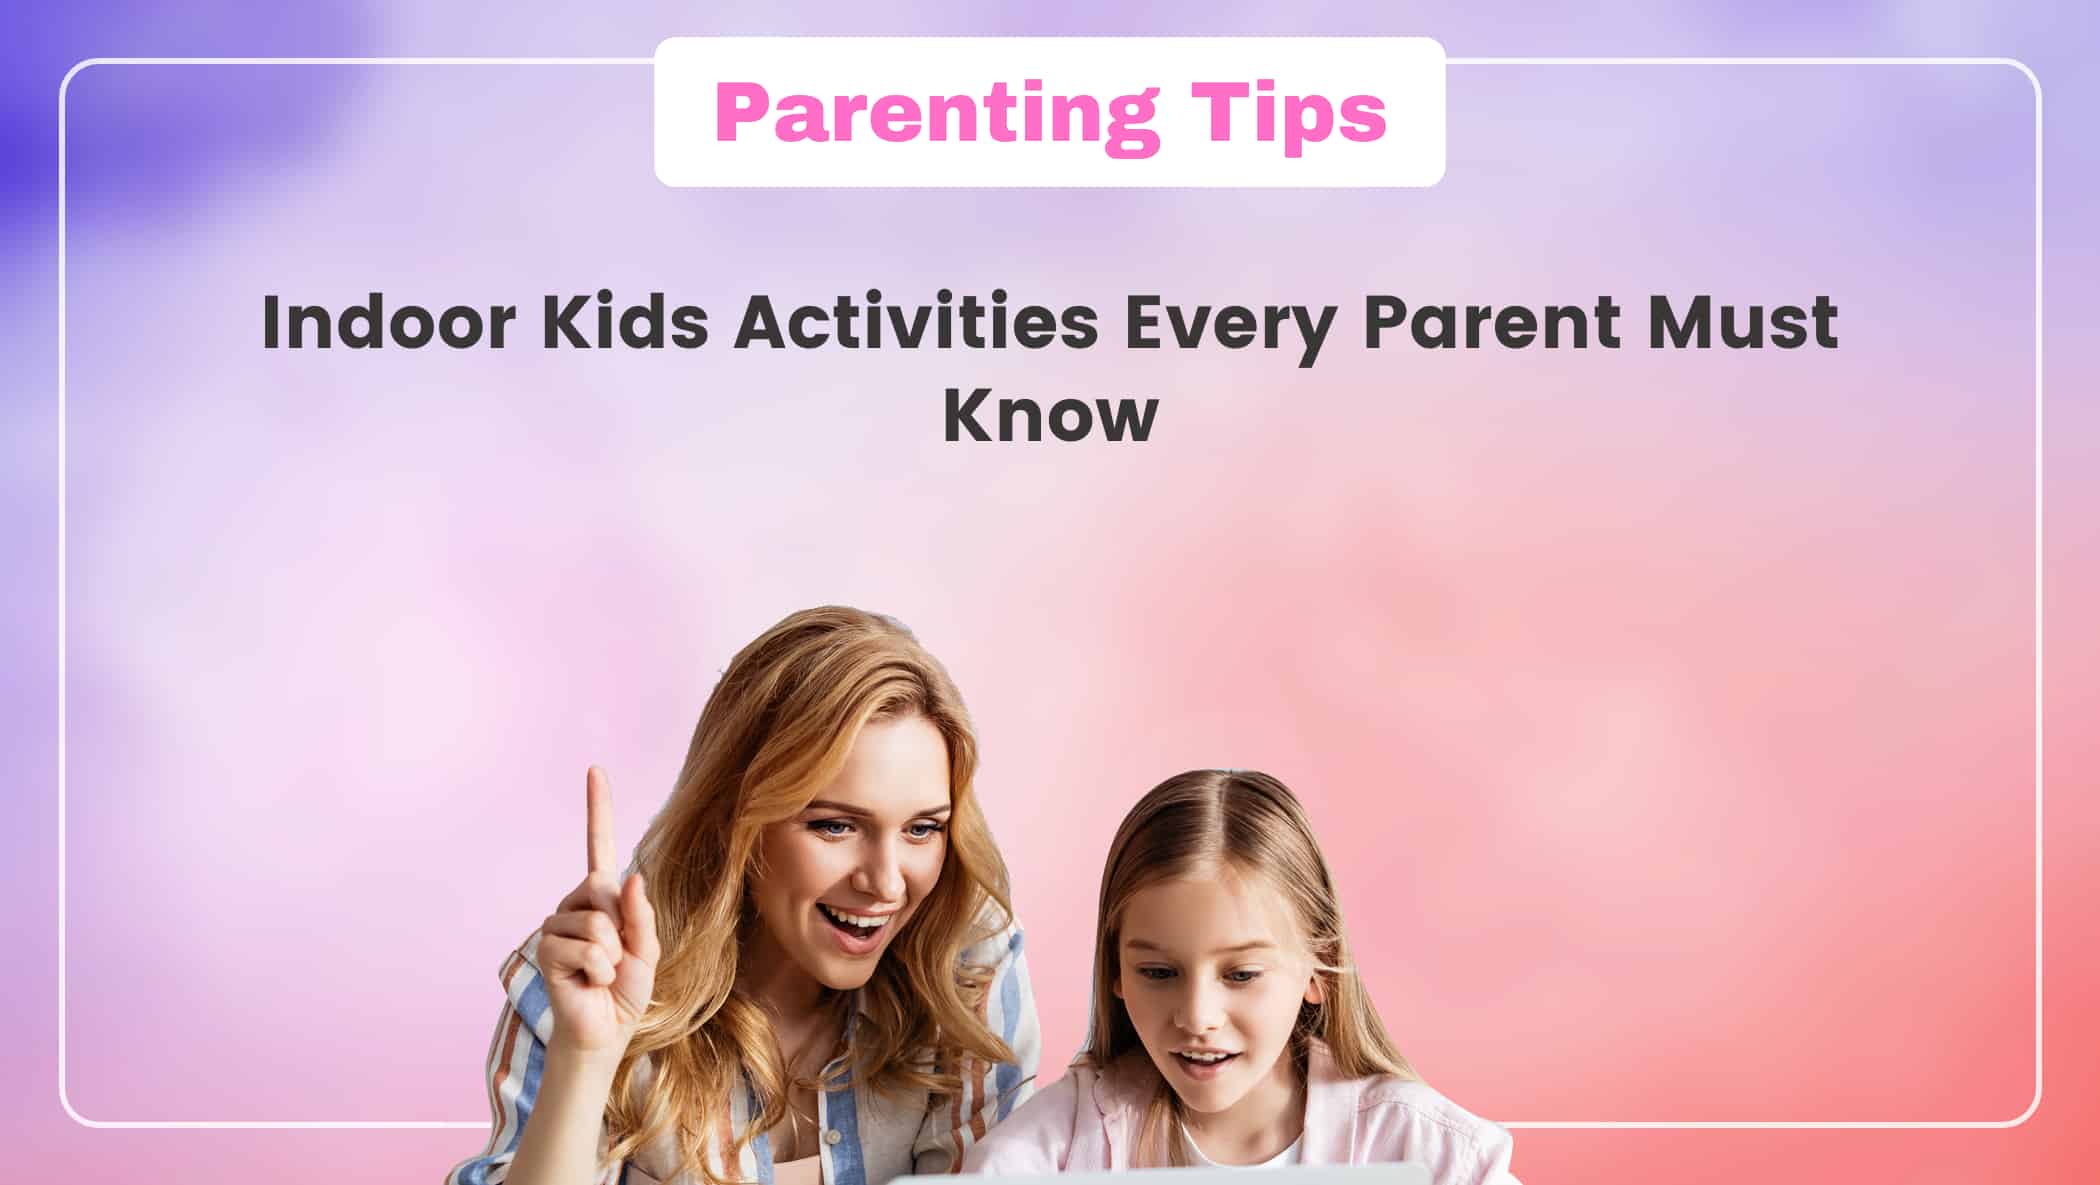 Indoor Kids Activities Every Parent Must Know Image